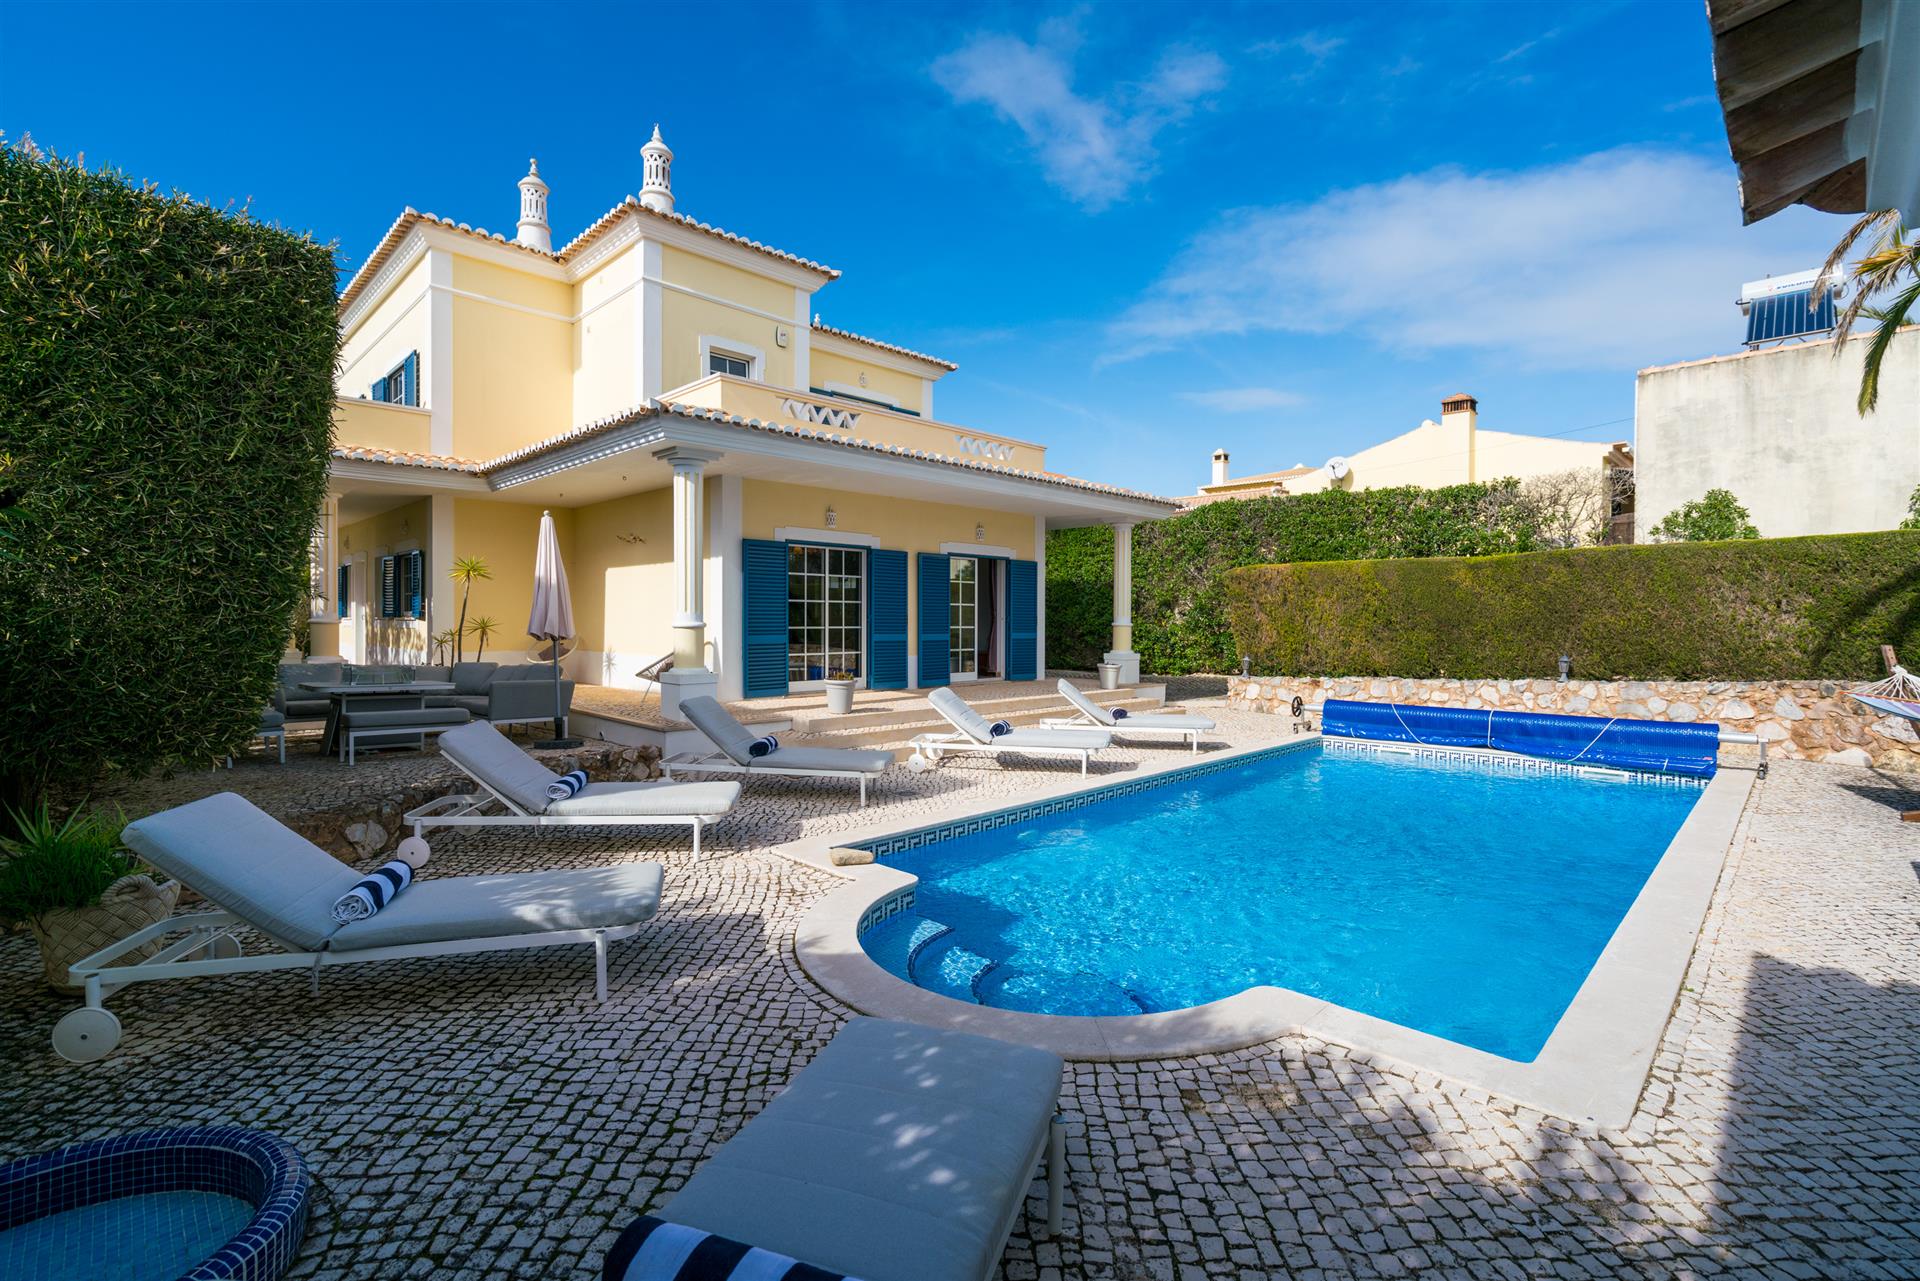 Selten zu vermarktende schöne freistehende Villa mit Pool in einer der besten Straßen von Luz